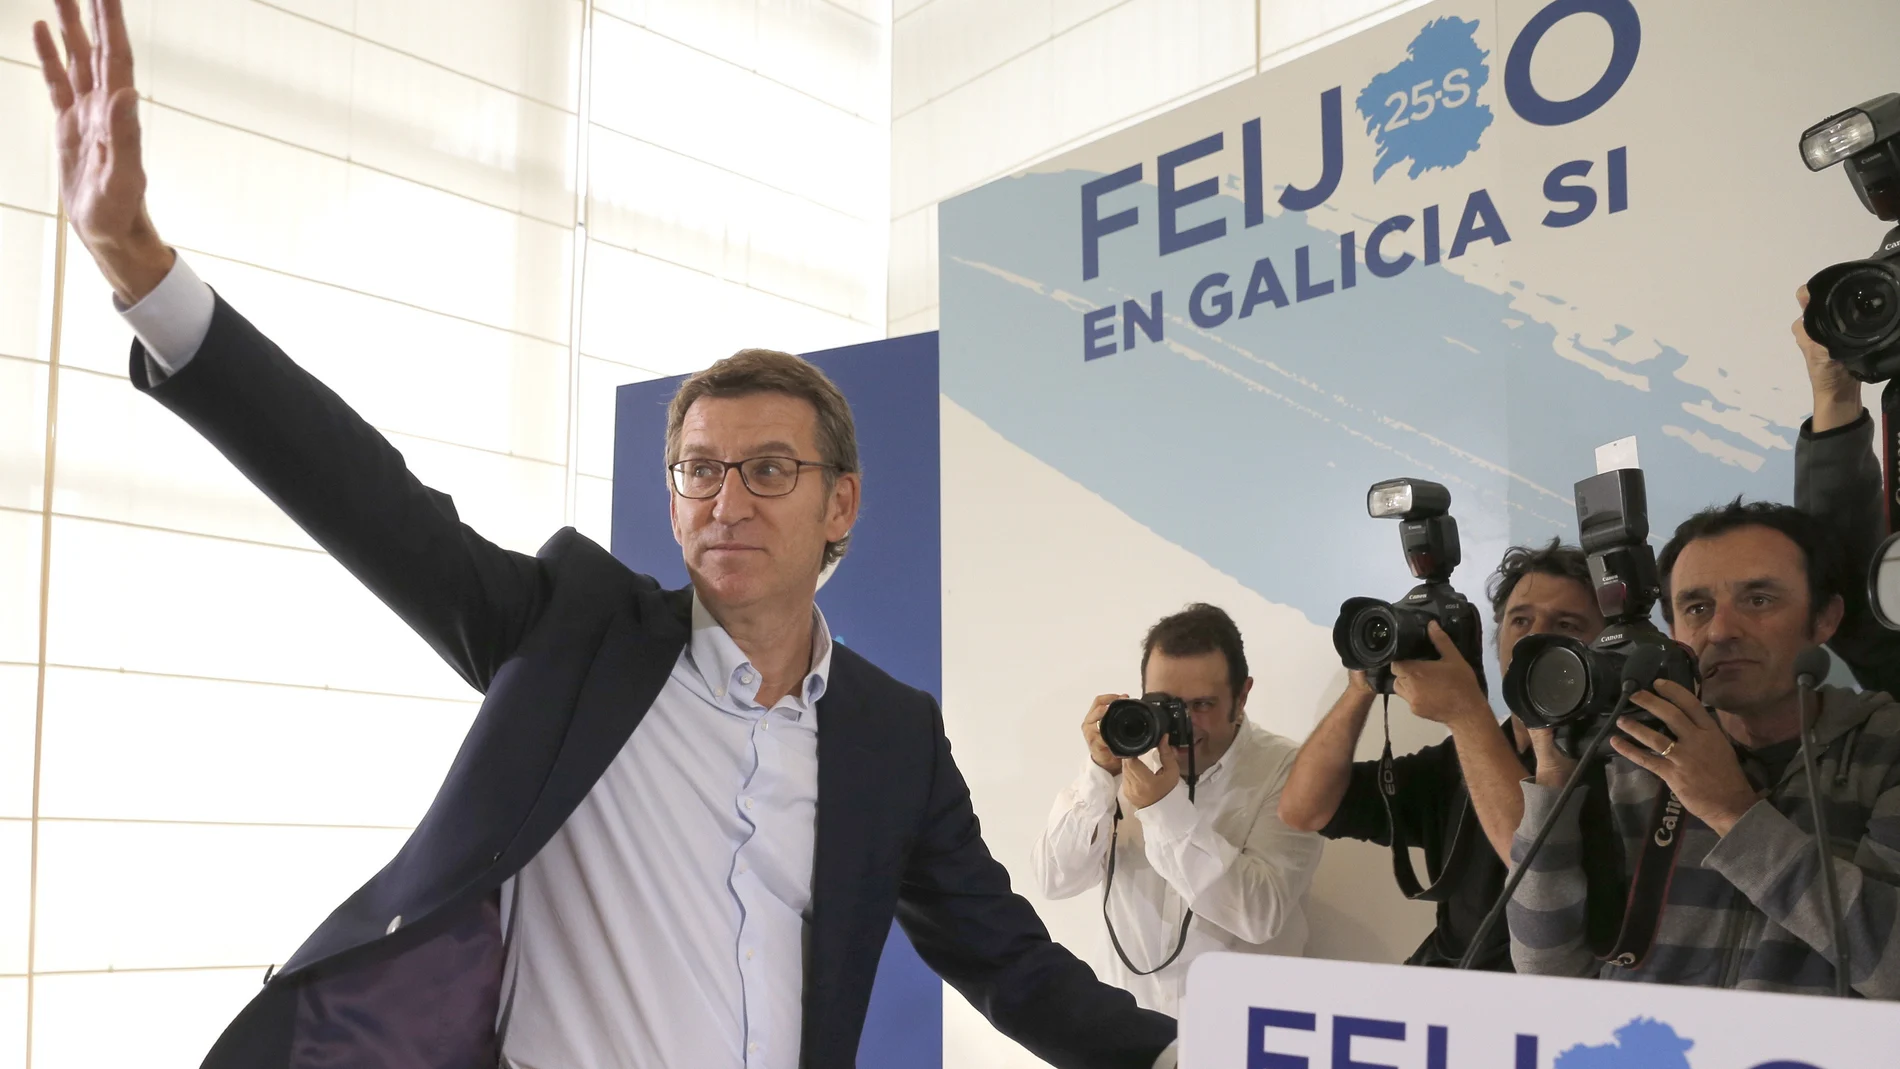 Núñez Feijoo, el único del PP que logra mayoría absoluta, se posiciona como sucesor de Rajoy